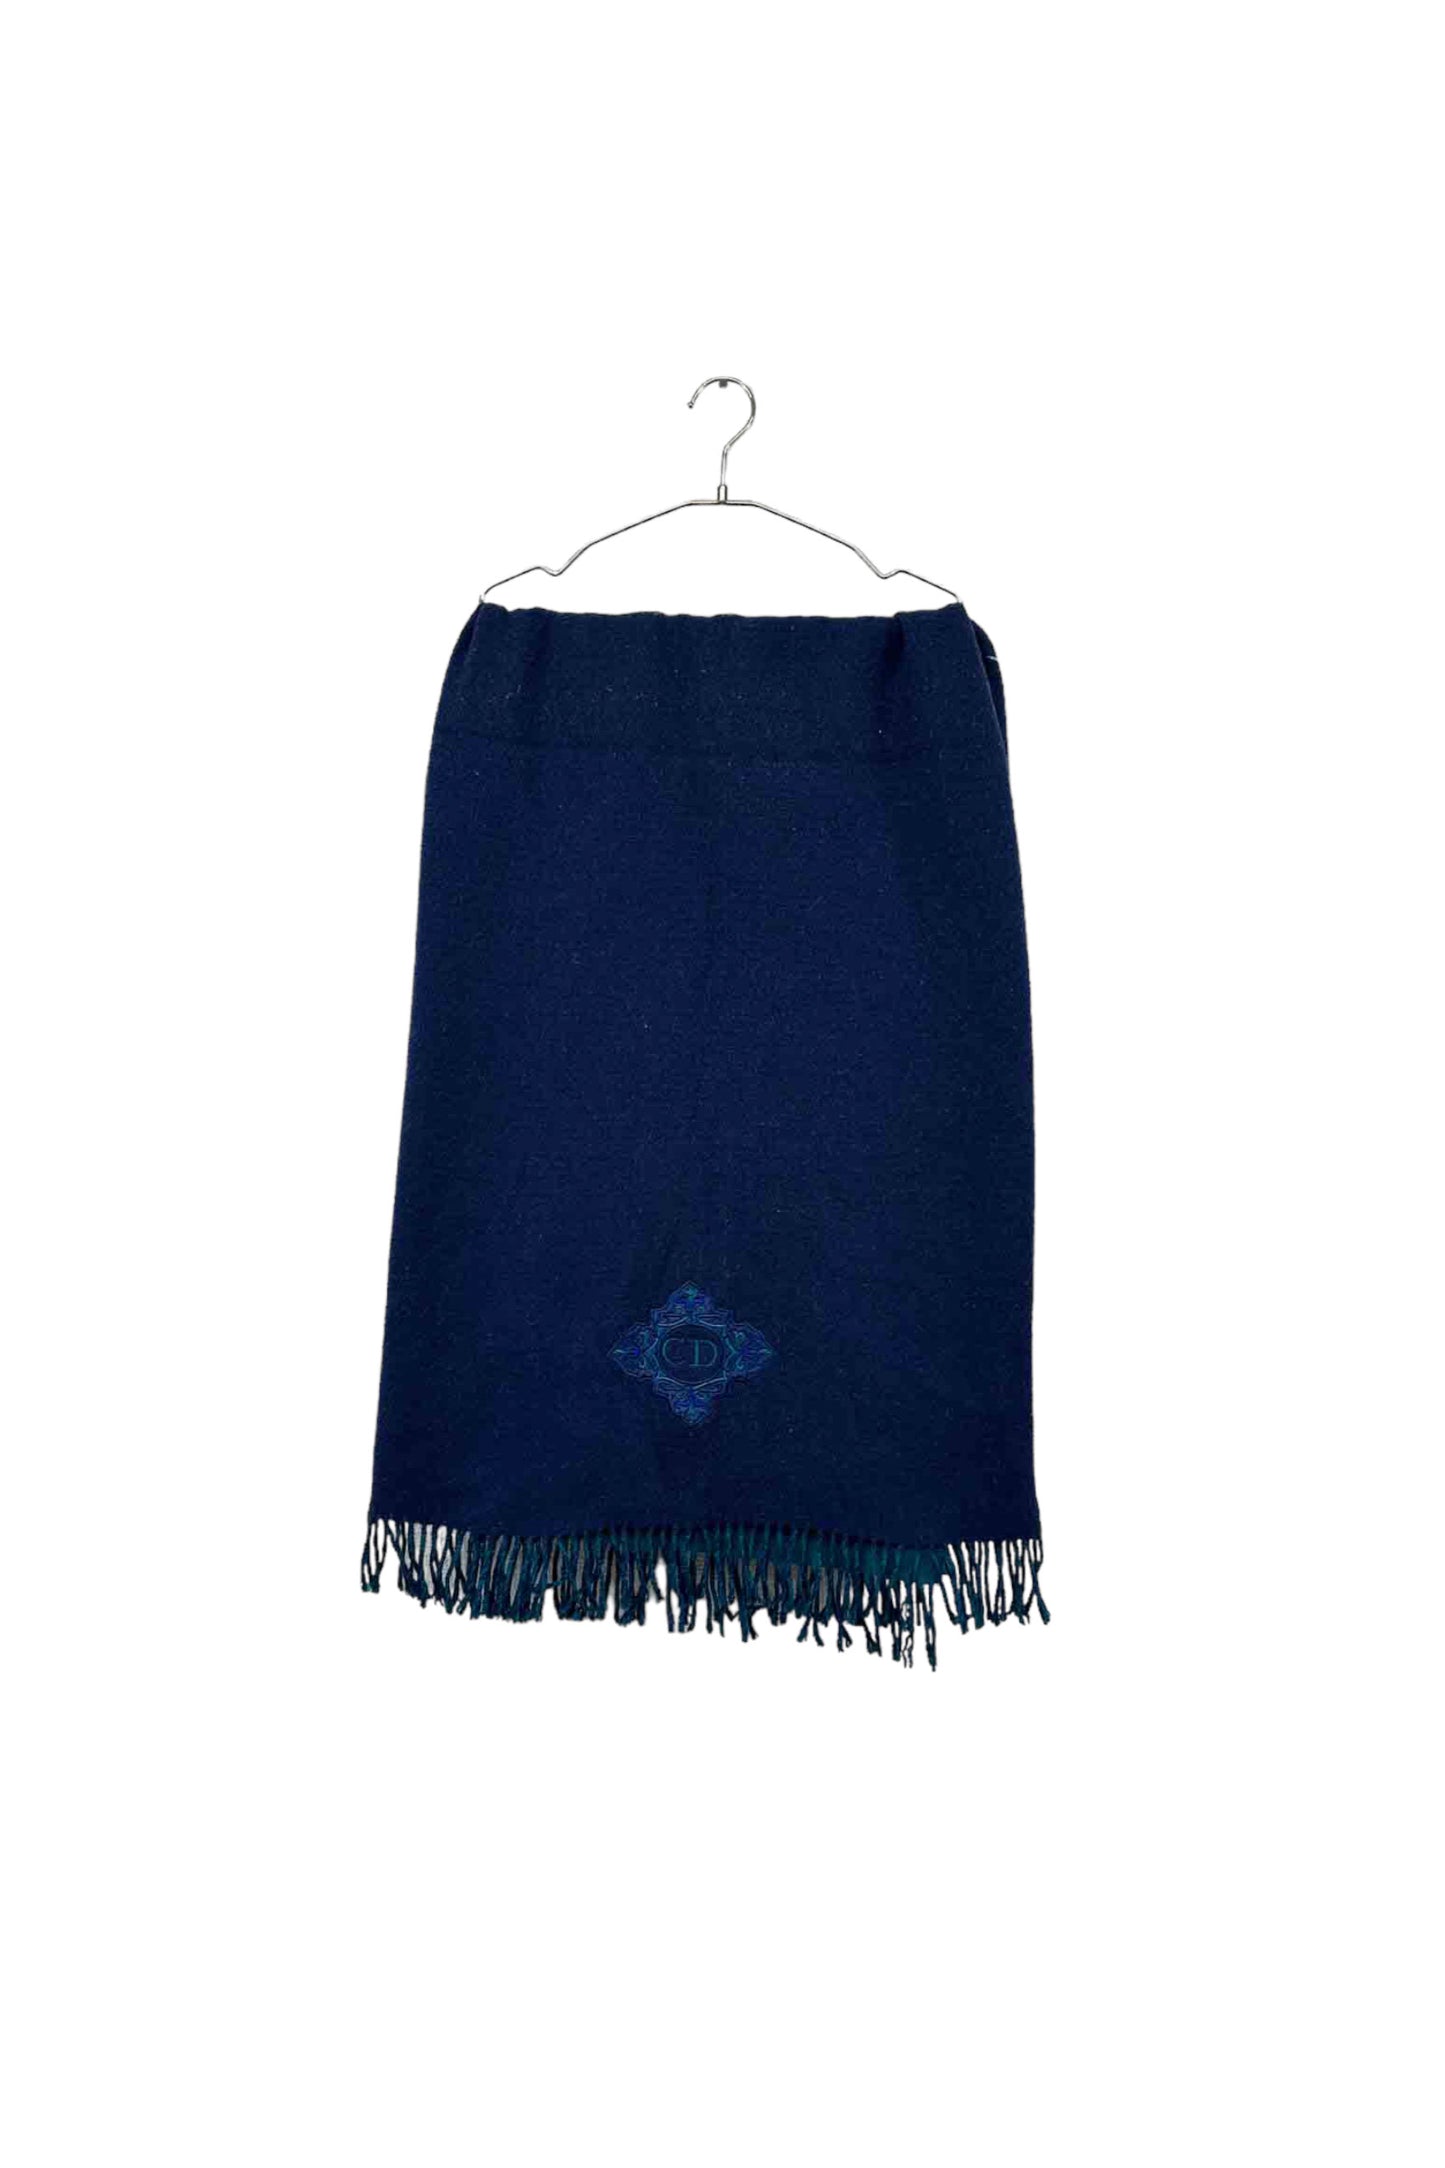 Christian Dior blue wool muffler